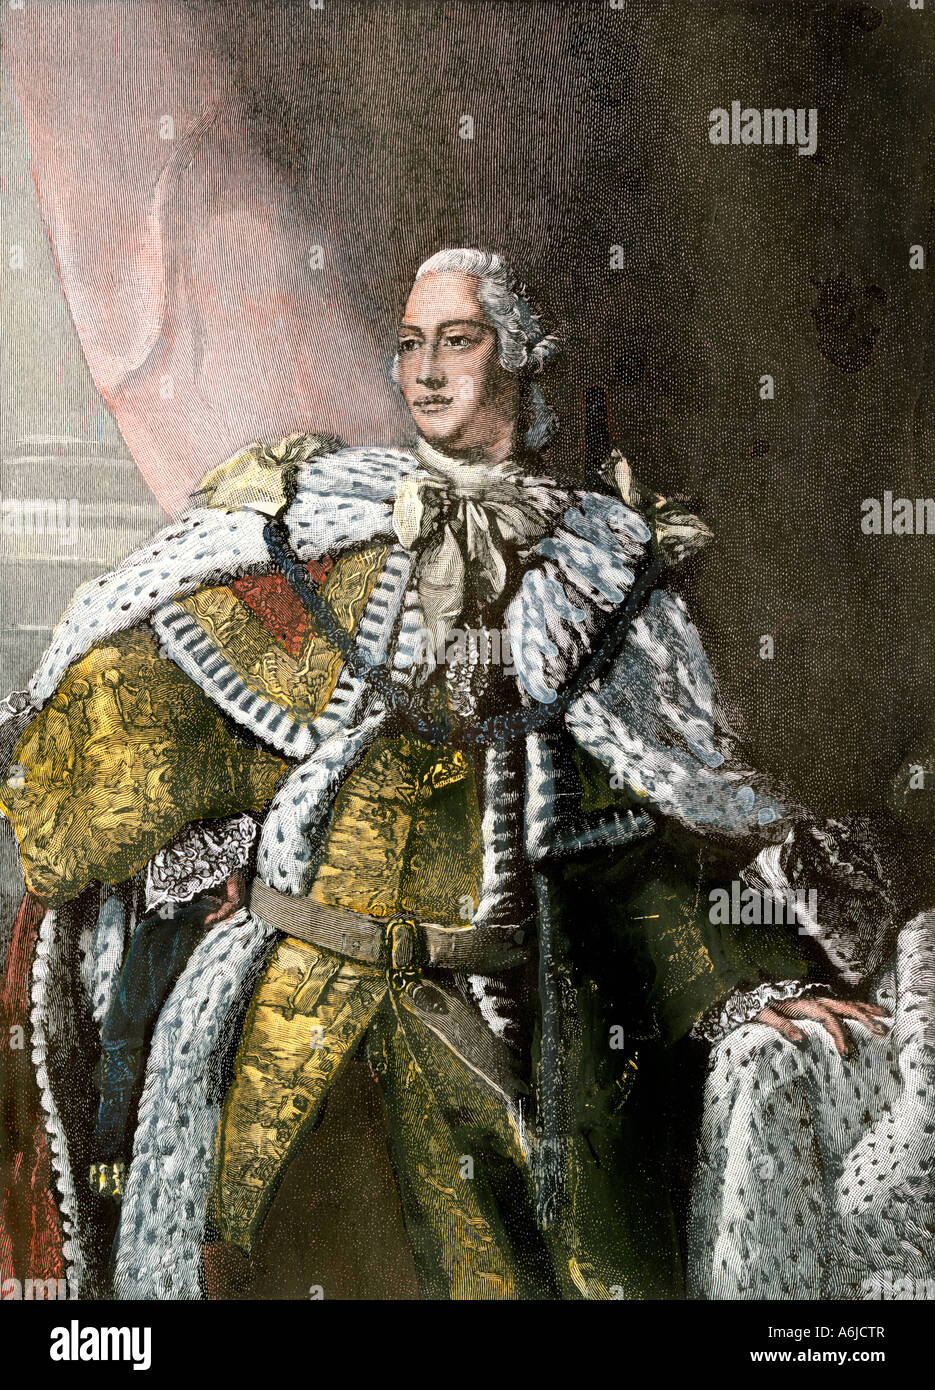 Le roi George III en or ornée de fourrure d'hermine 1767. À la main, gravure sur bois Banque D'Images